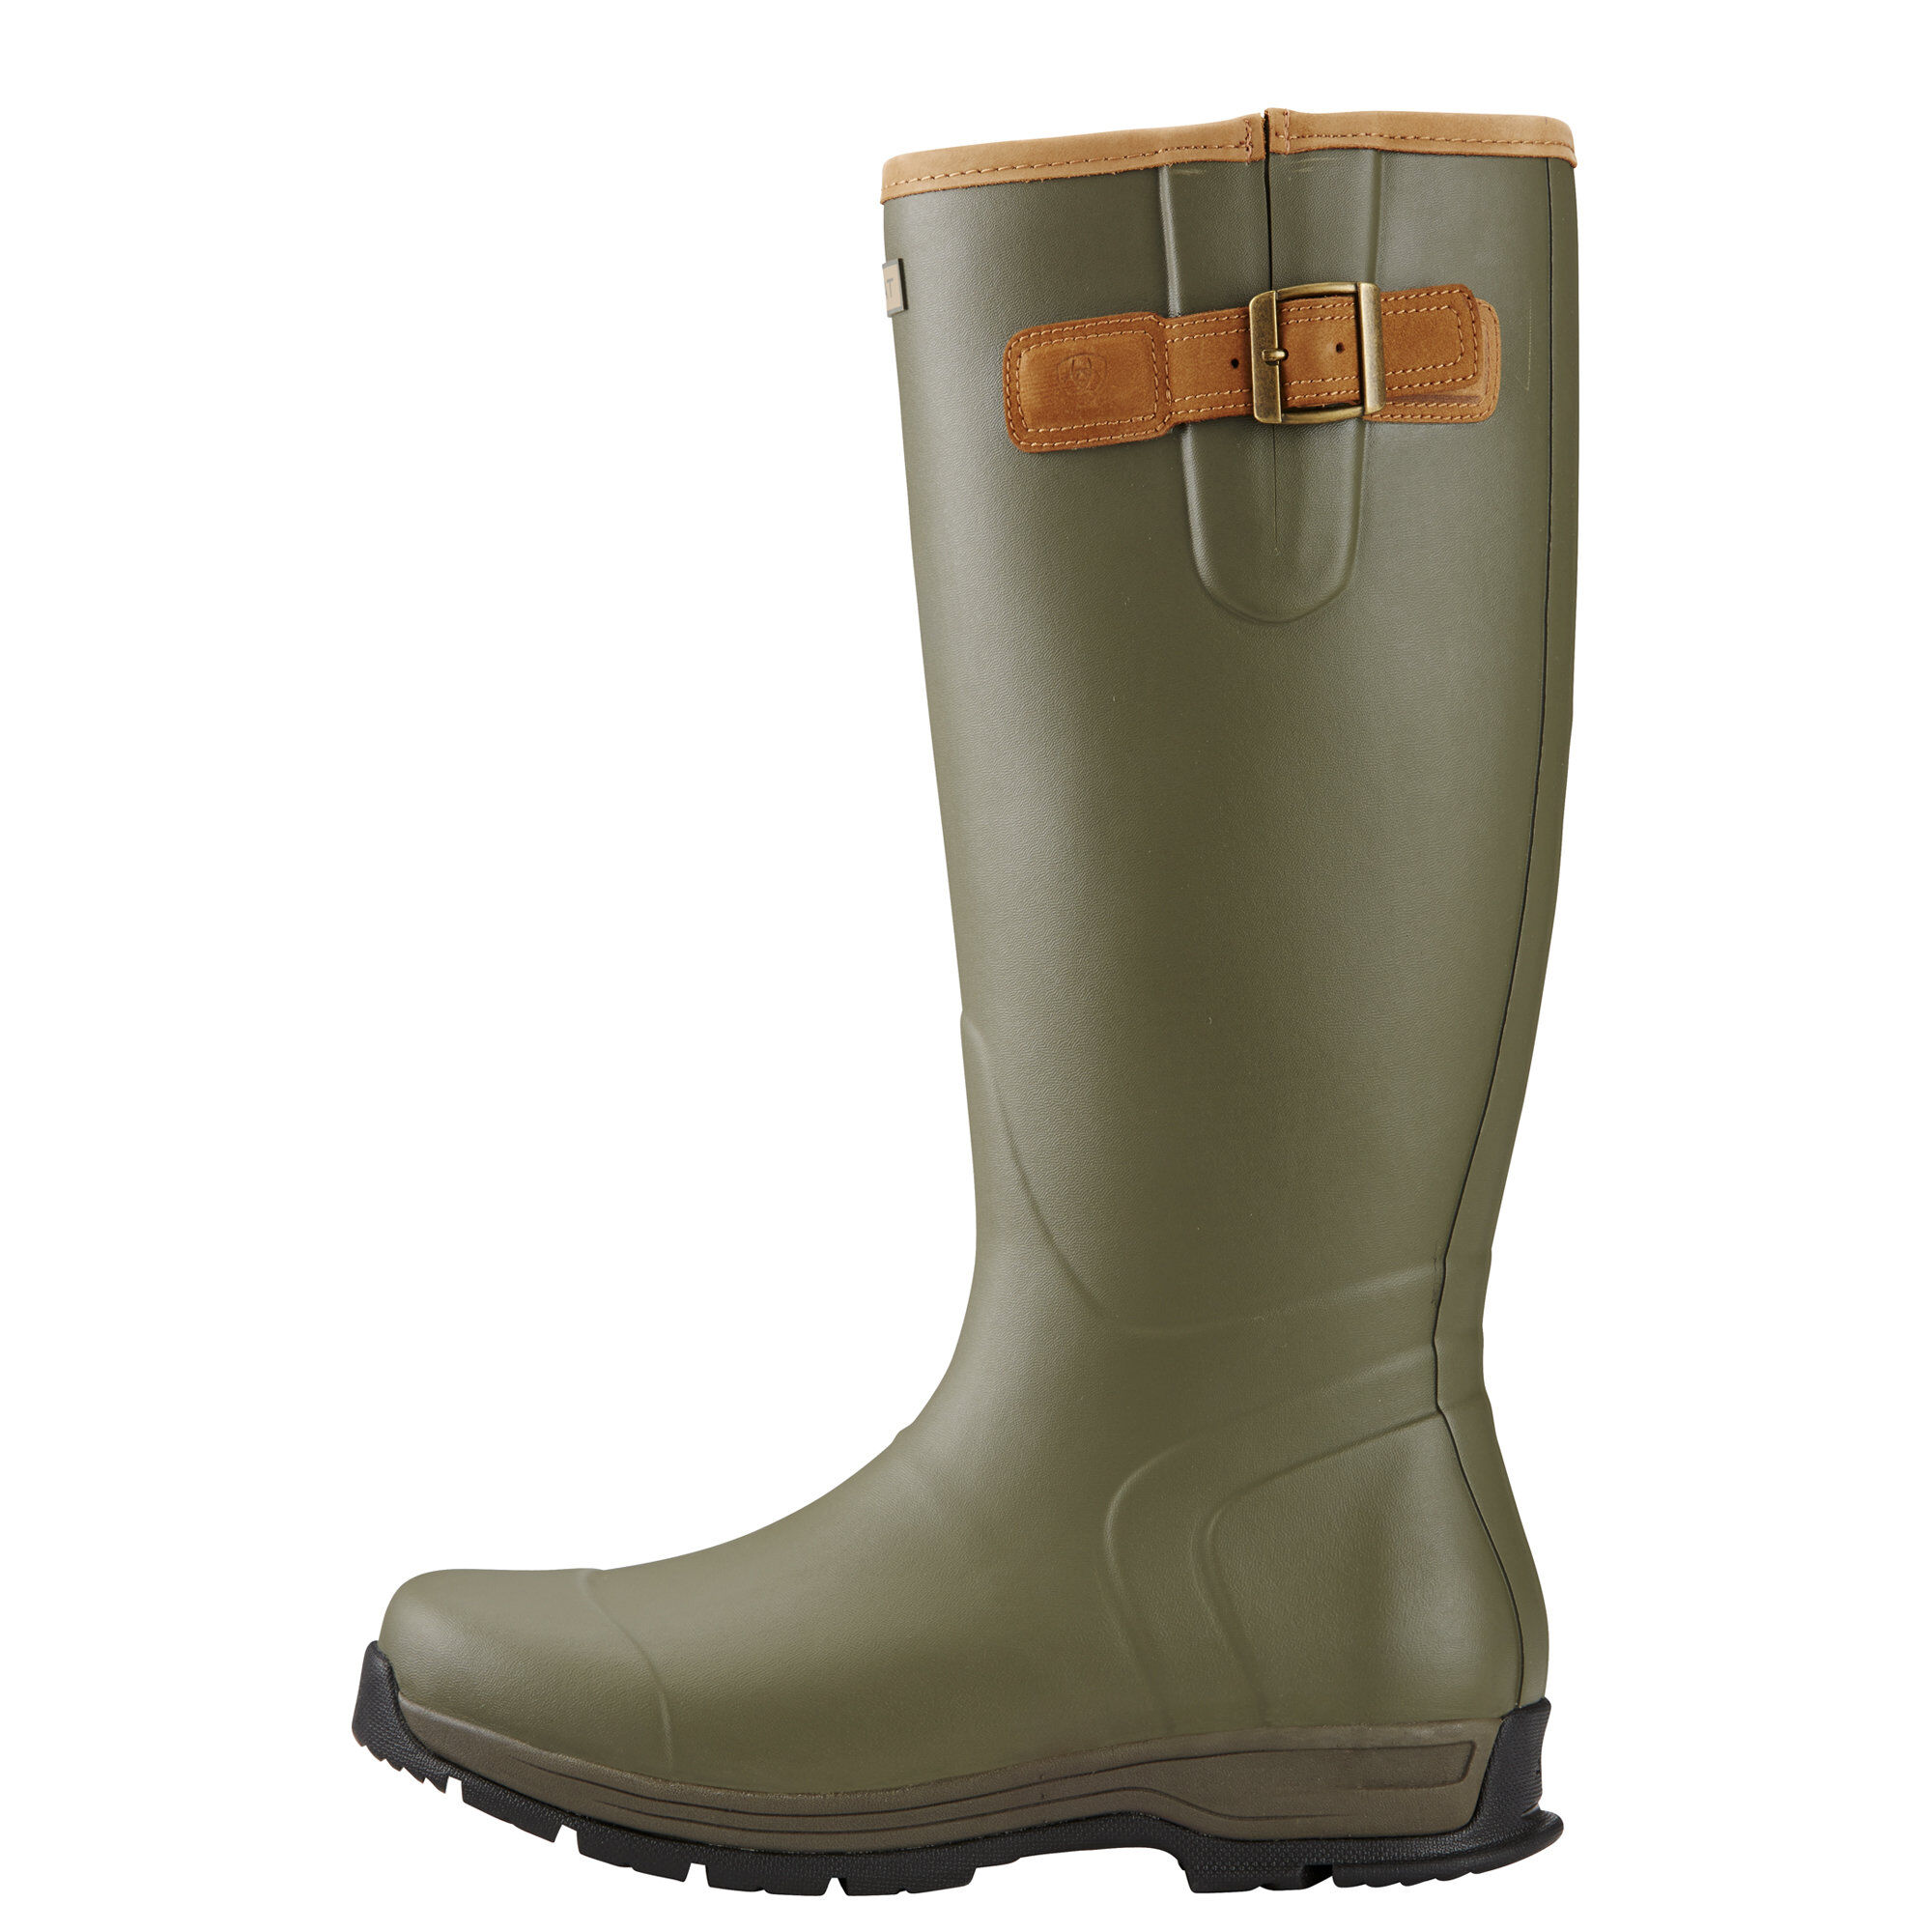 Waterproof Wellington Boots Ariat Ladies Burford Wellies 